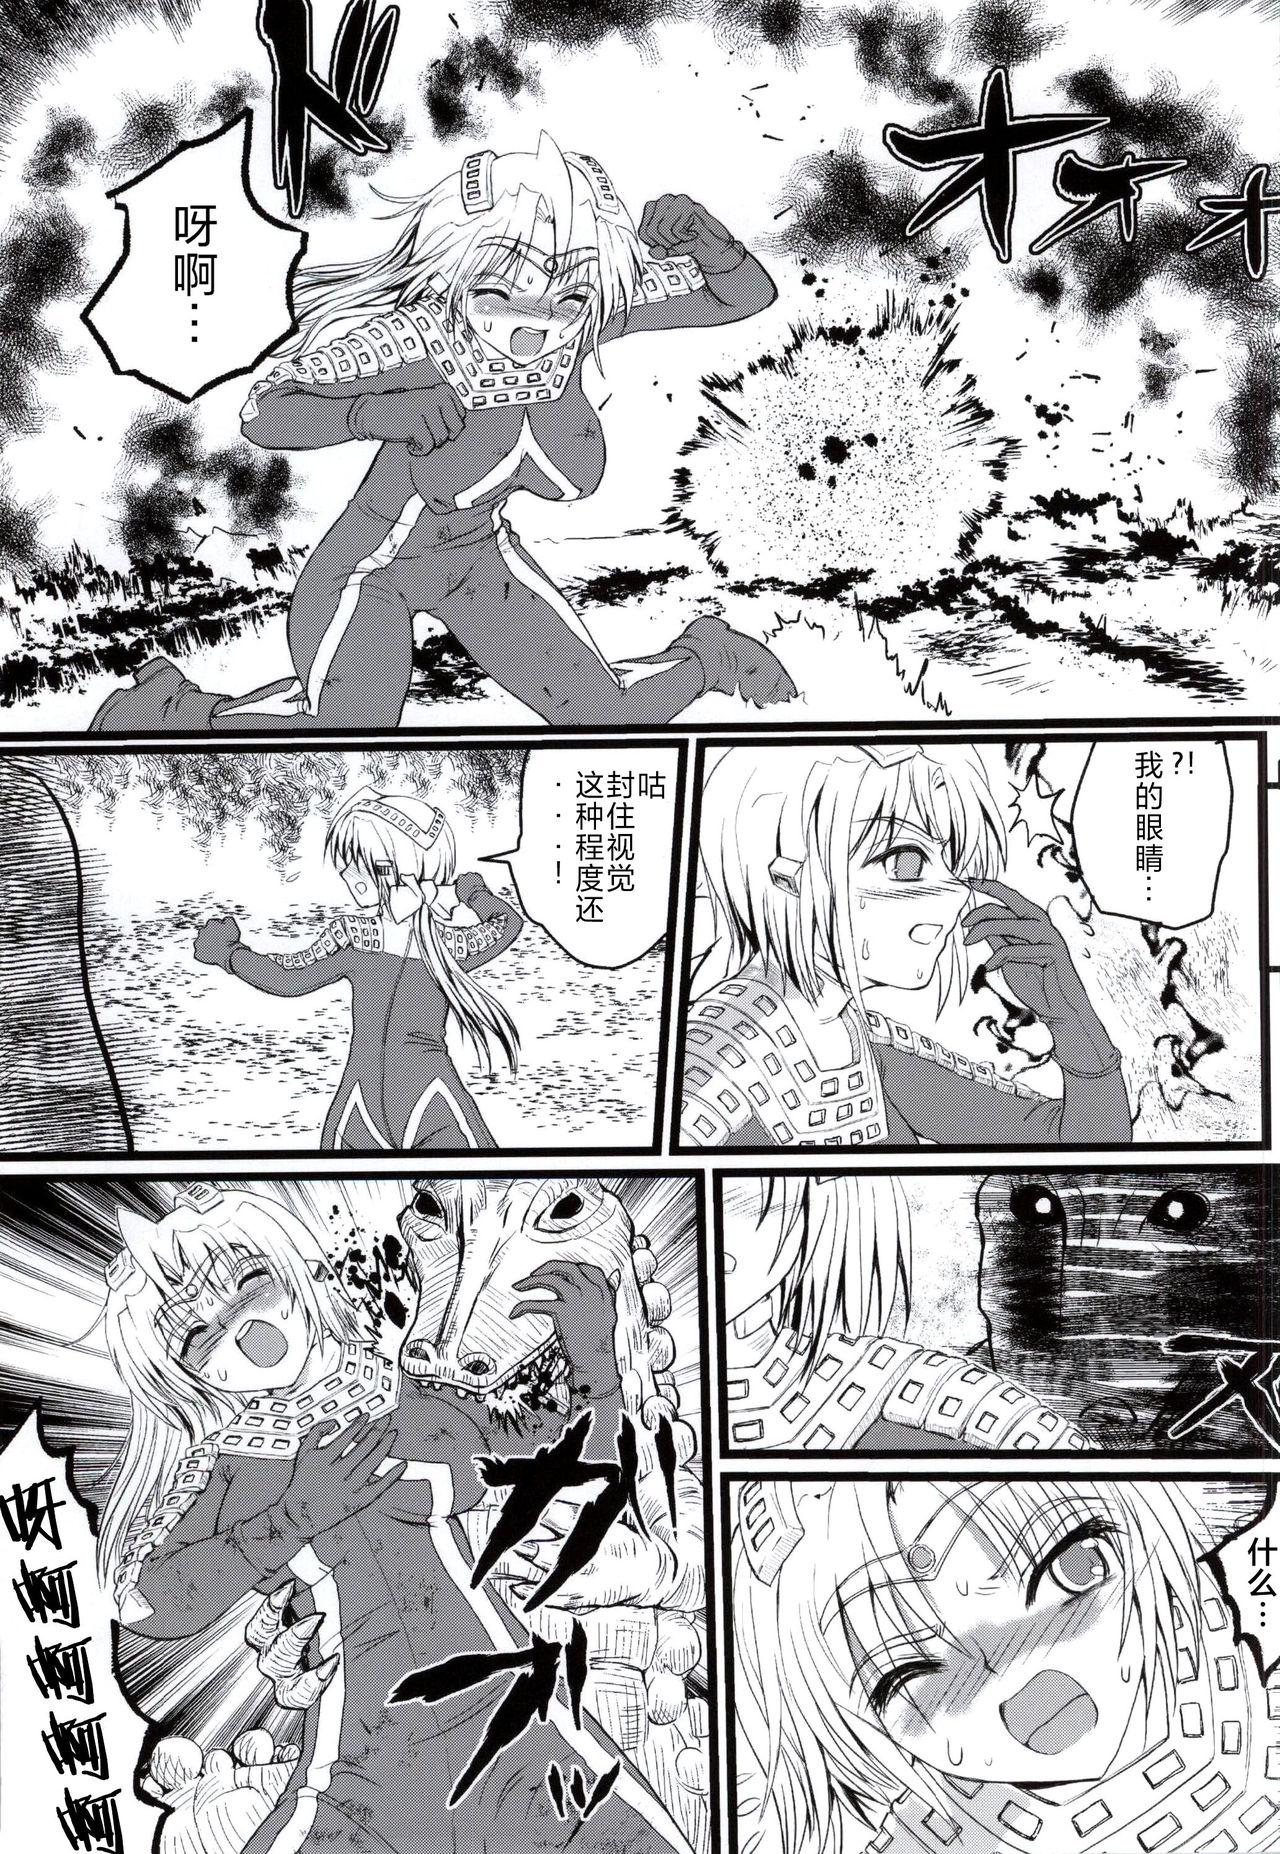 Tight Ultra Nanako Zettaizetsumei! Vol. 3 - Ultraman Mommy - Page 4